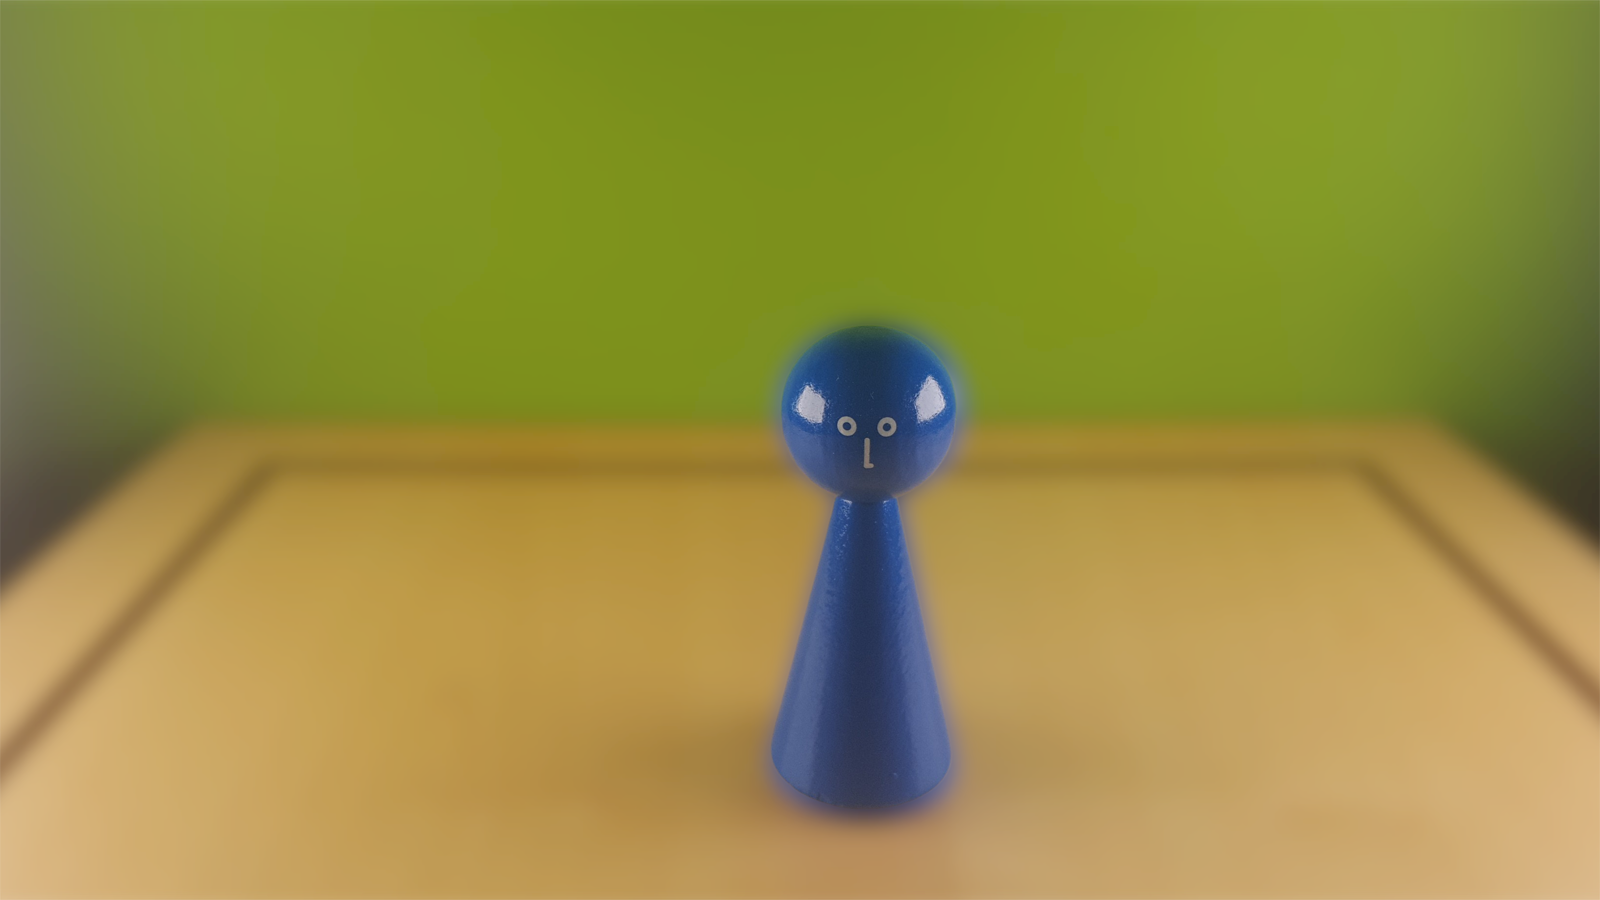 www.systembrett.at · Systembrett-Artikel · Einzel-Figur 10 cm in blau (mit Augen);